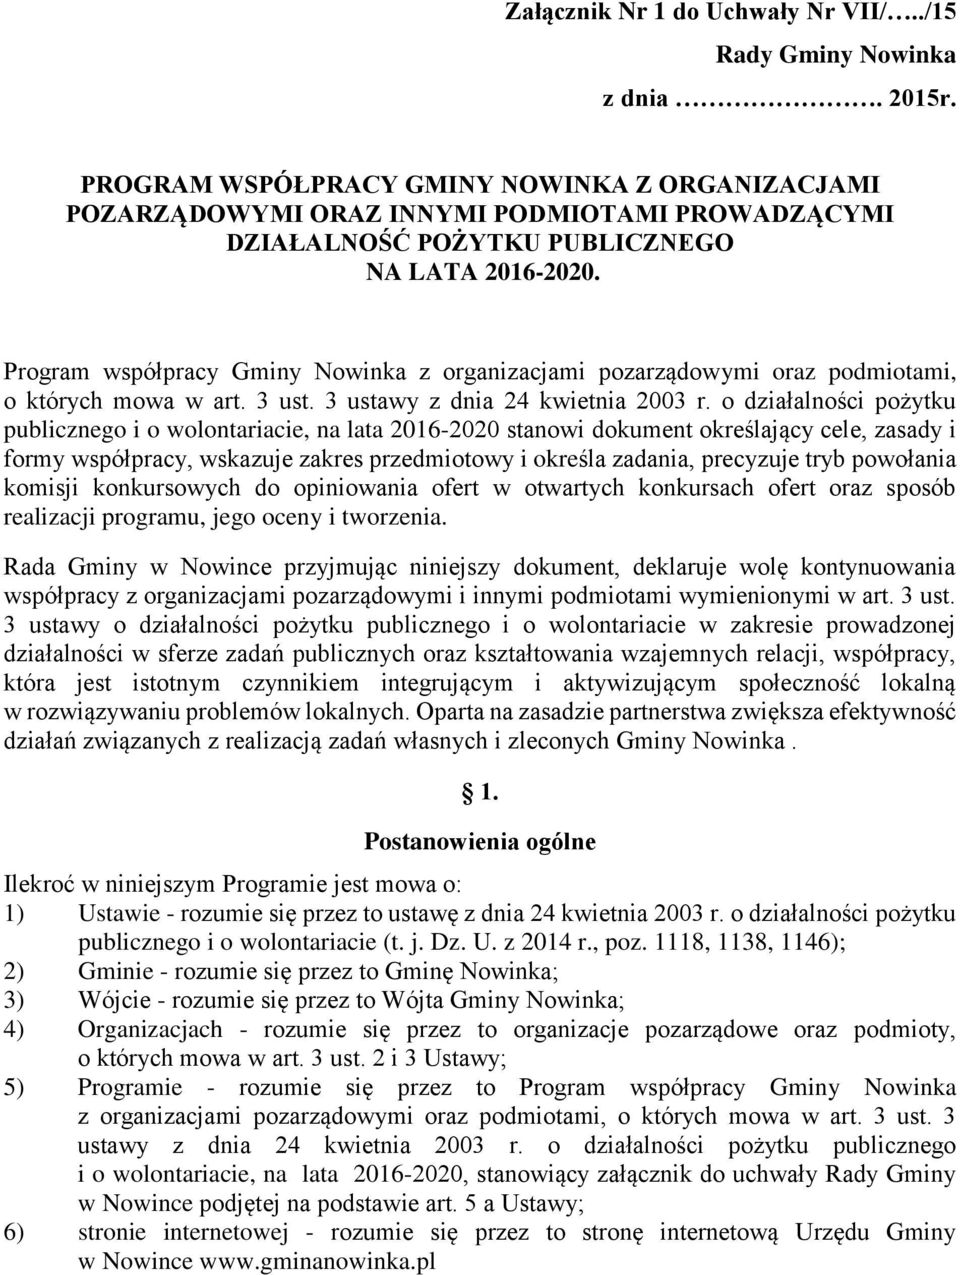 Program współpracy Gminy Nowinka z organizacjami pozarządowymi oraz podmiotami, o których mowa w art. 3 ust. 3 ustawy z dnia 24 kwietnia 2003 r.